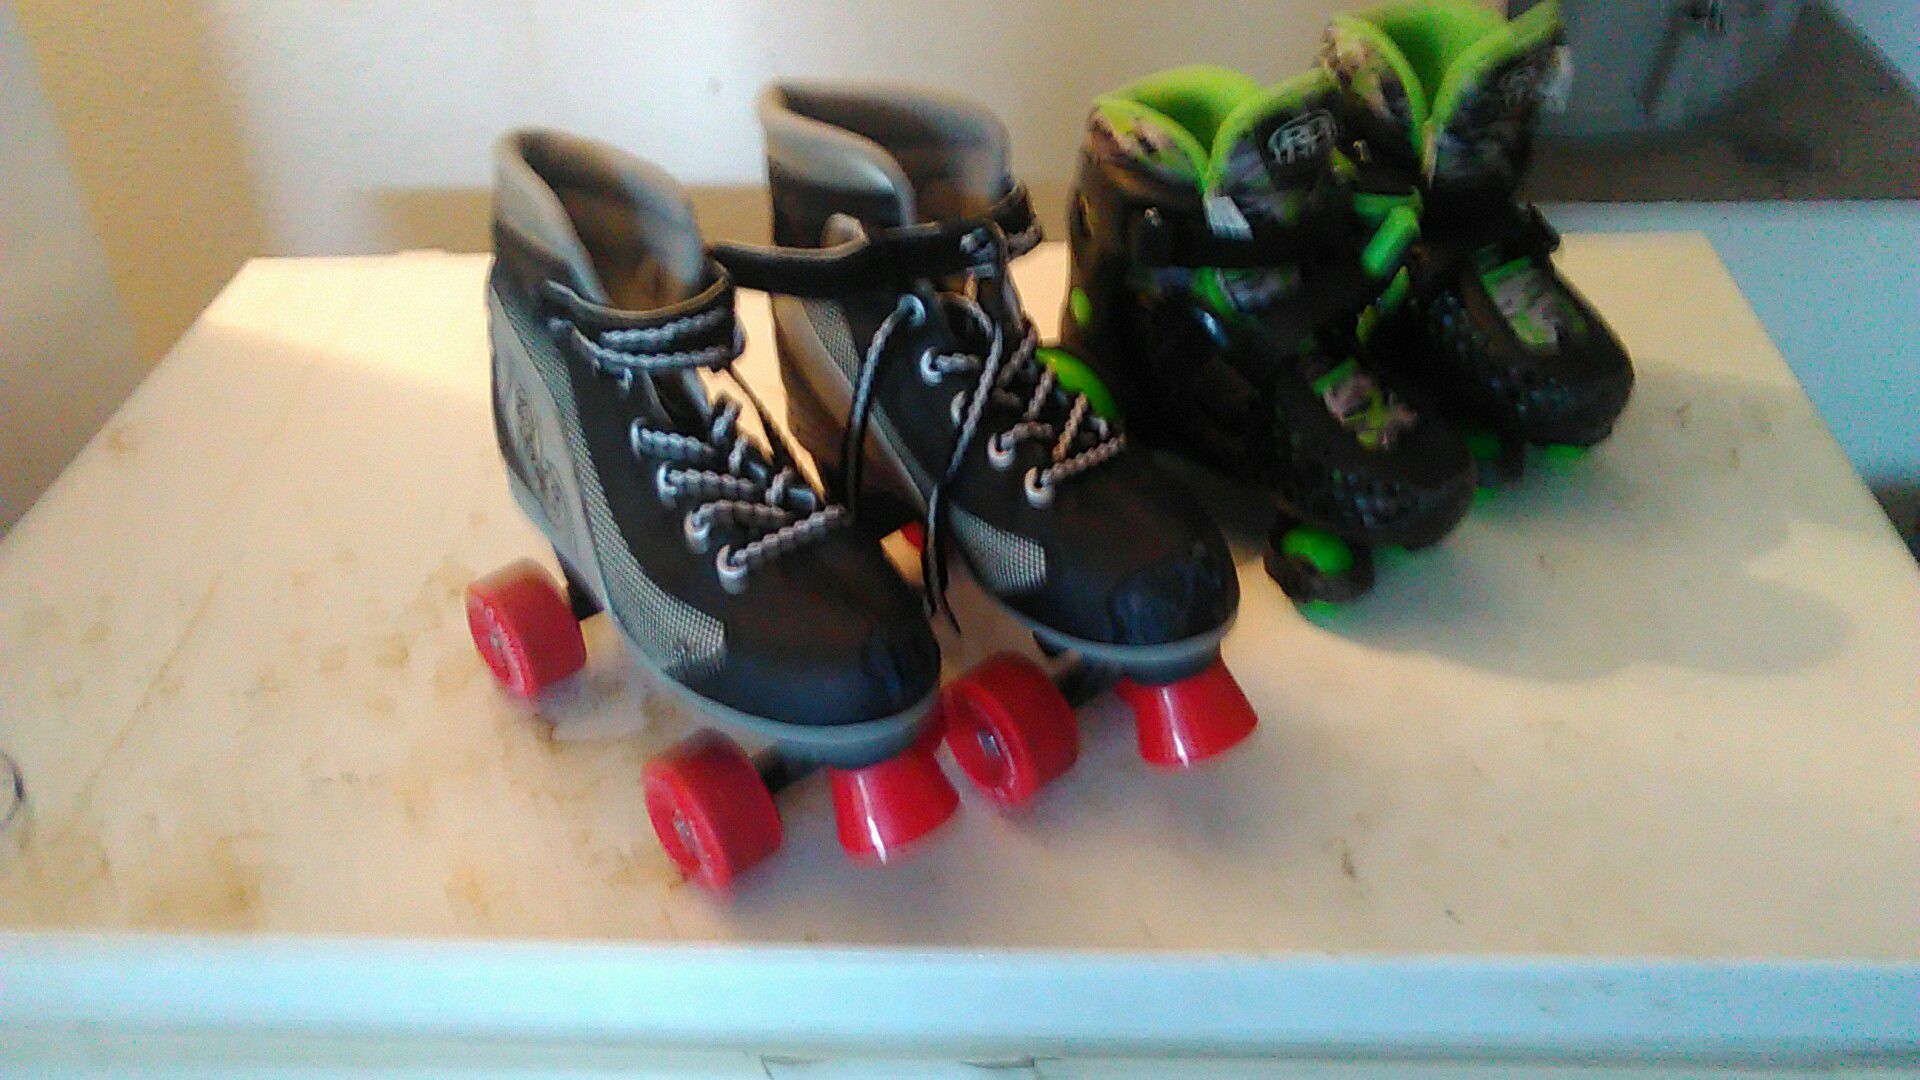 Shoe roller skates